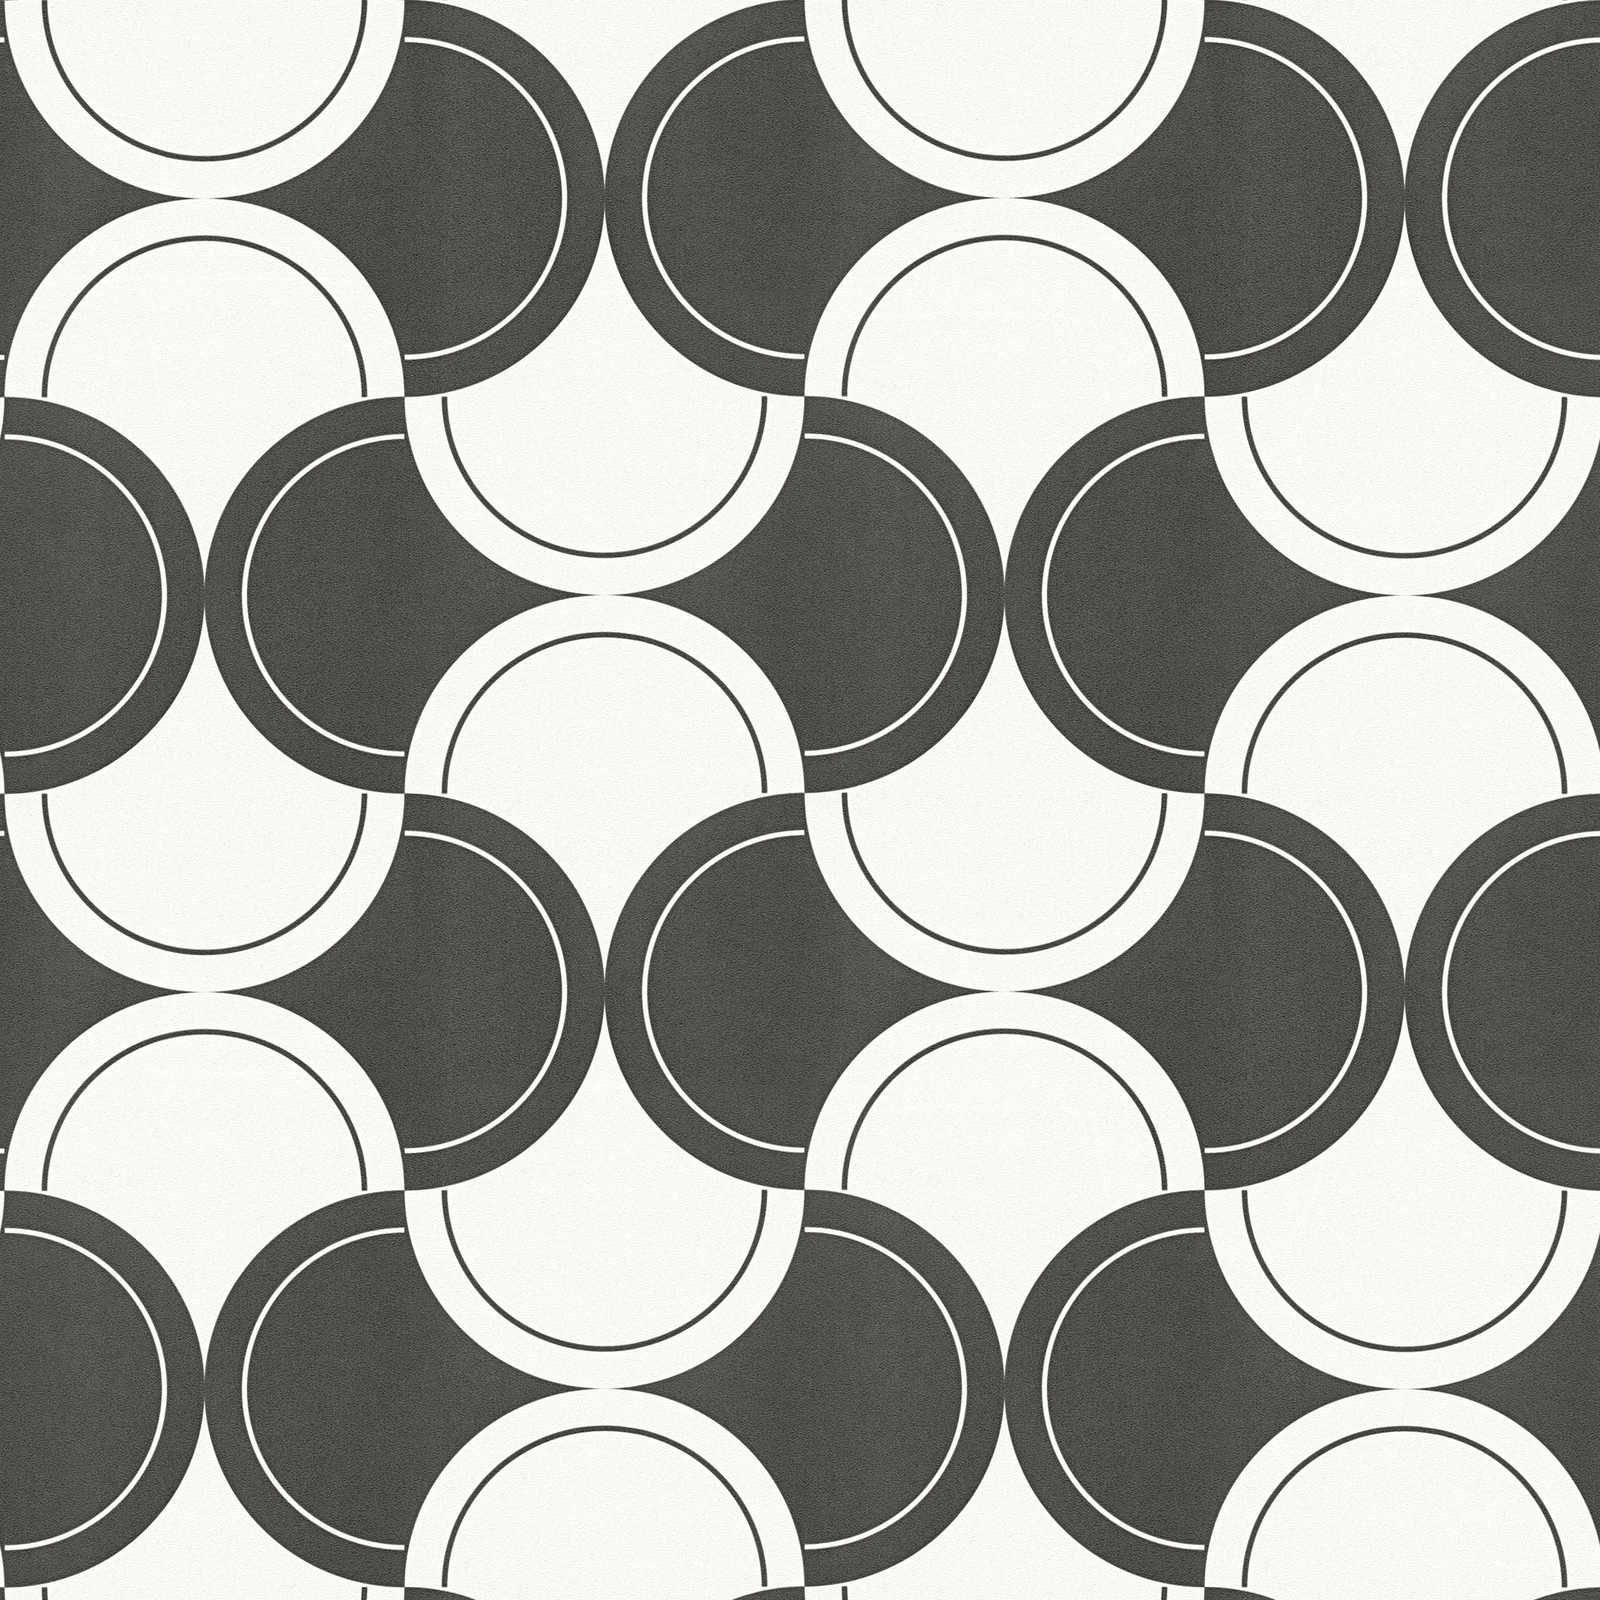             Papel pintado no tejido motivo retro con círculos estilo años 70 - blanco y negro
        